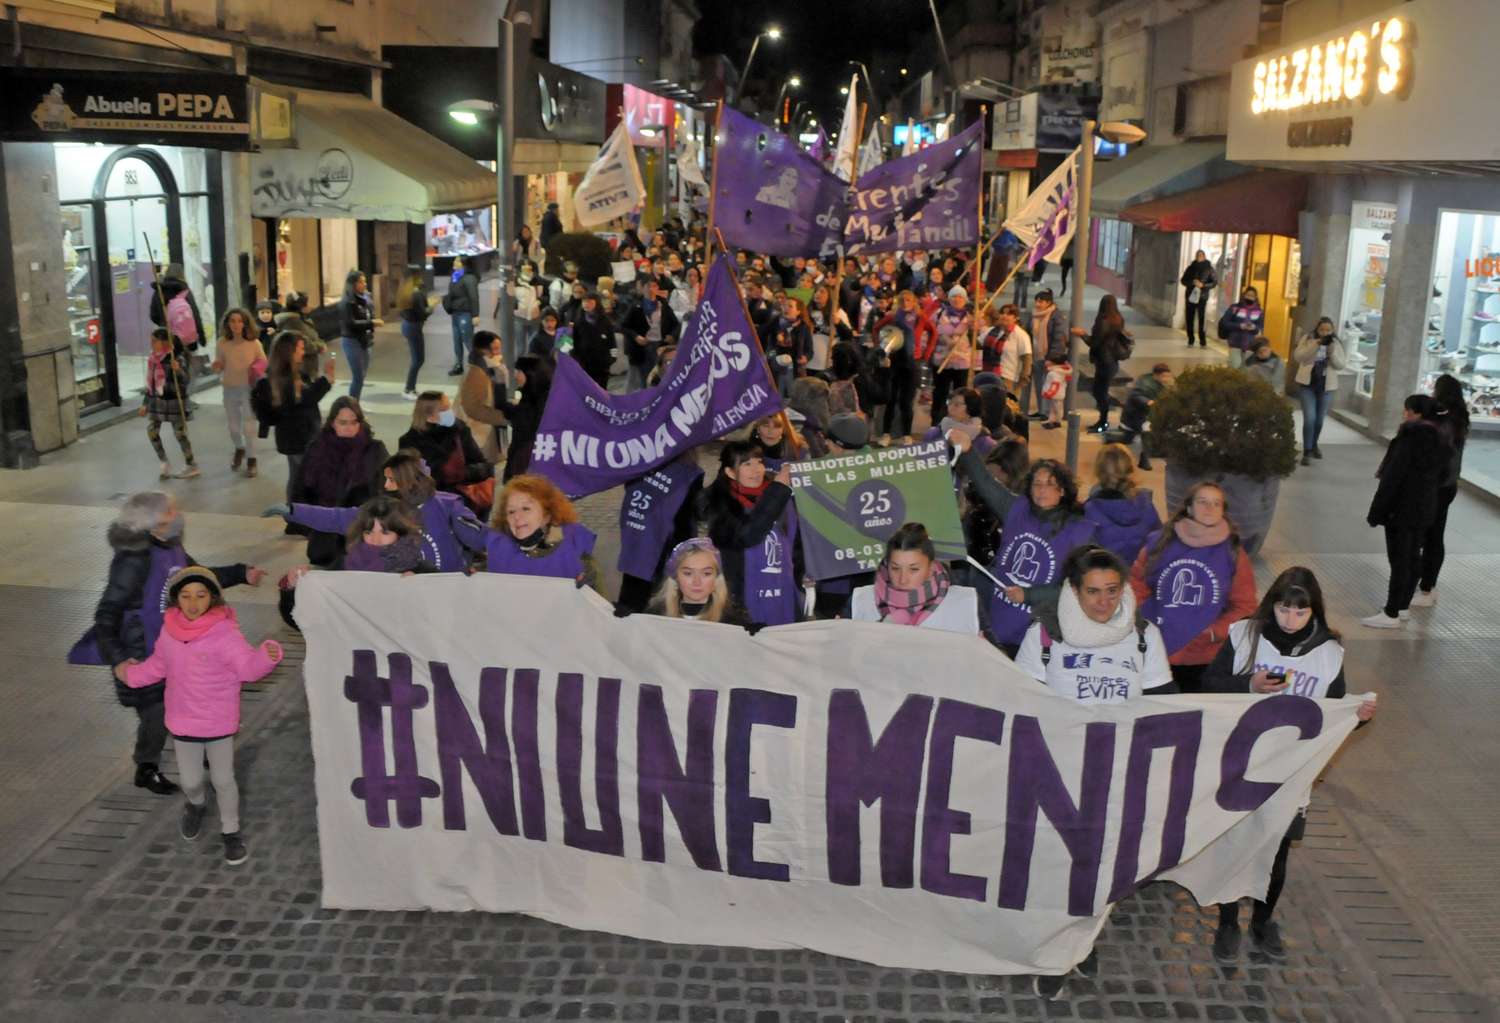 Con demandas reiteradas y la visita de la ministra de Género, "Ni una menos" vuelve a las calles